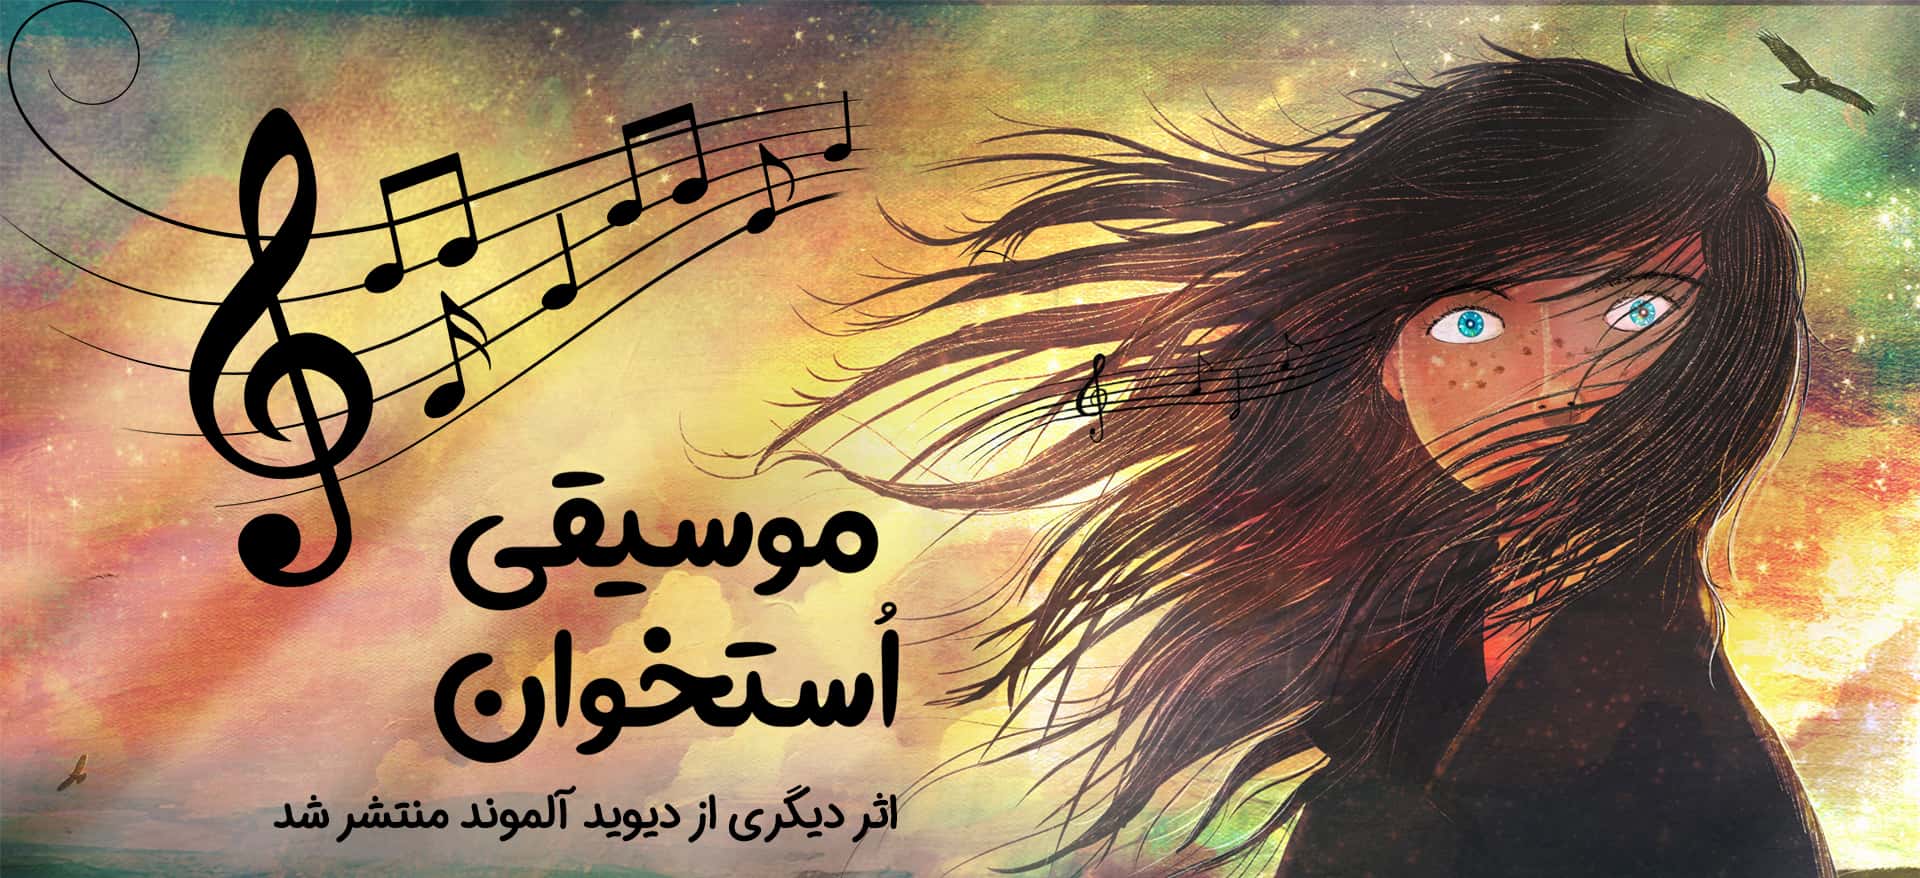 موسیقی استخوان - نشر ایران بان